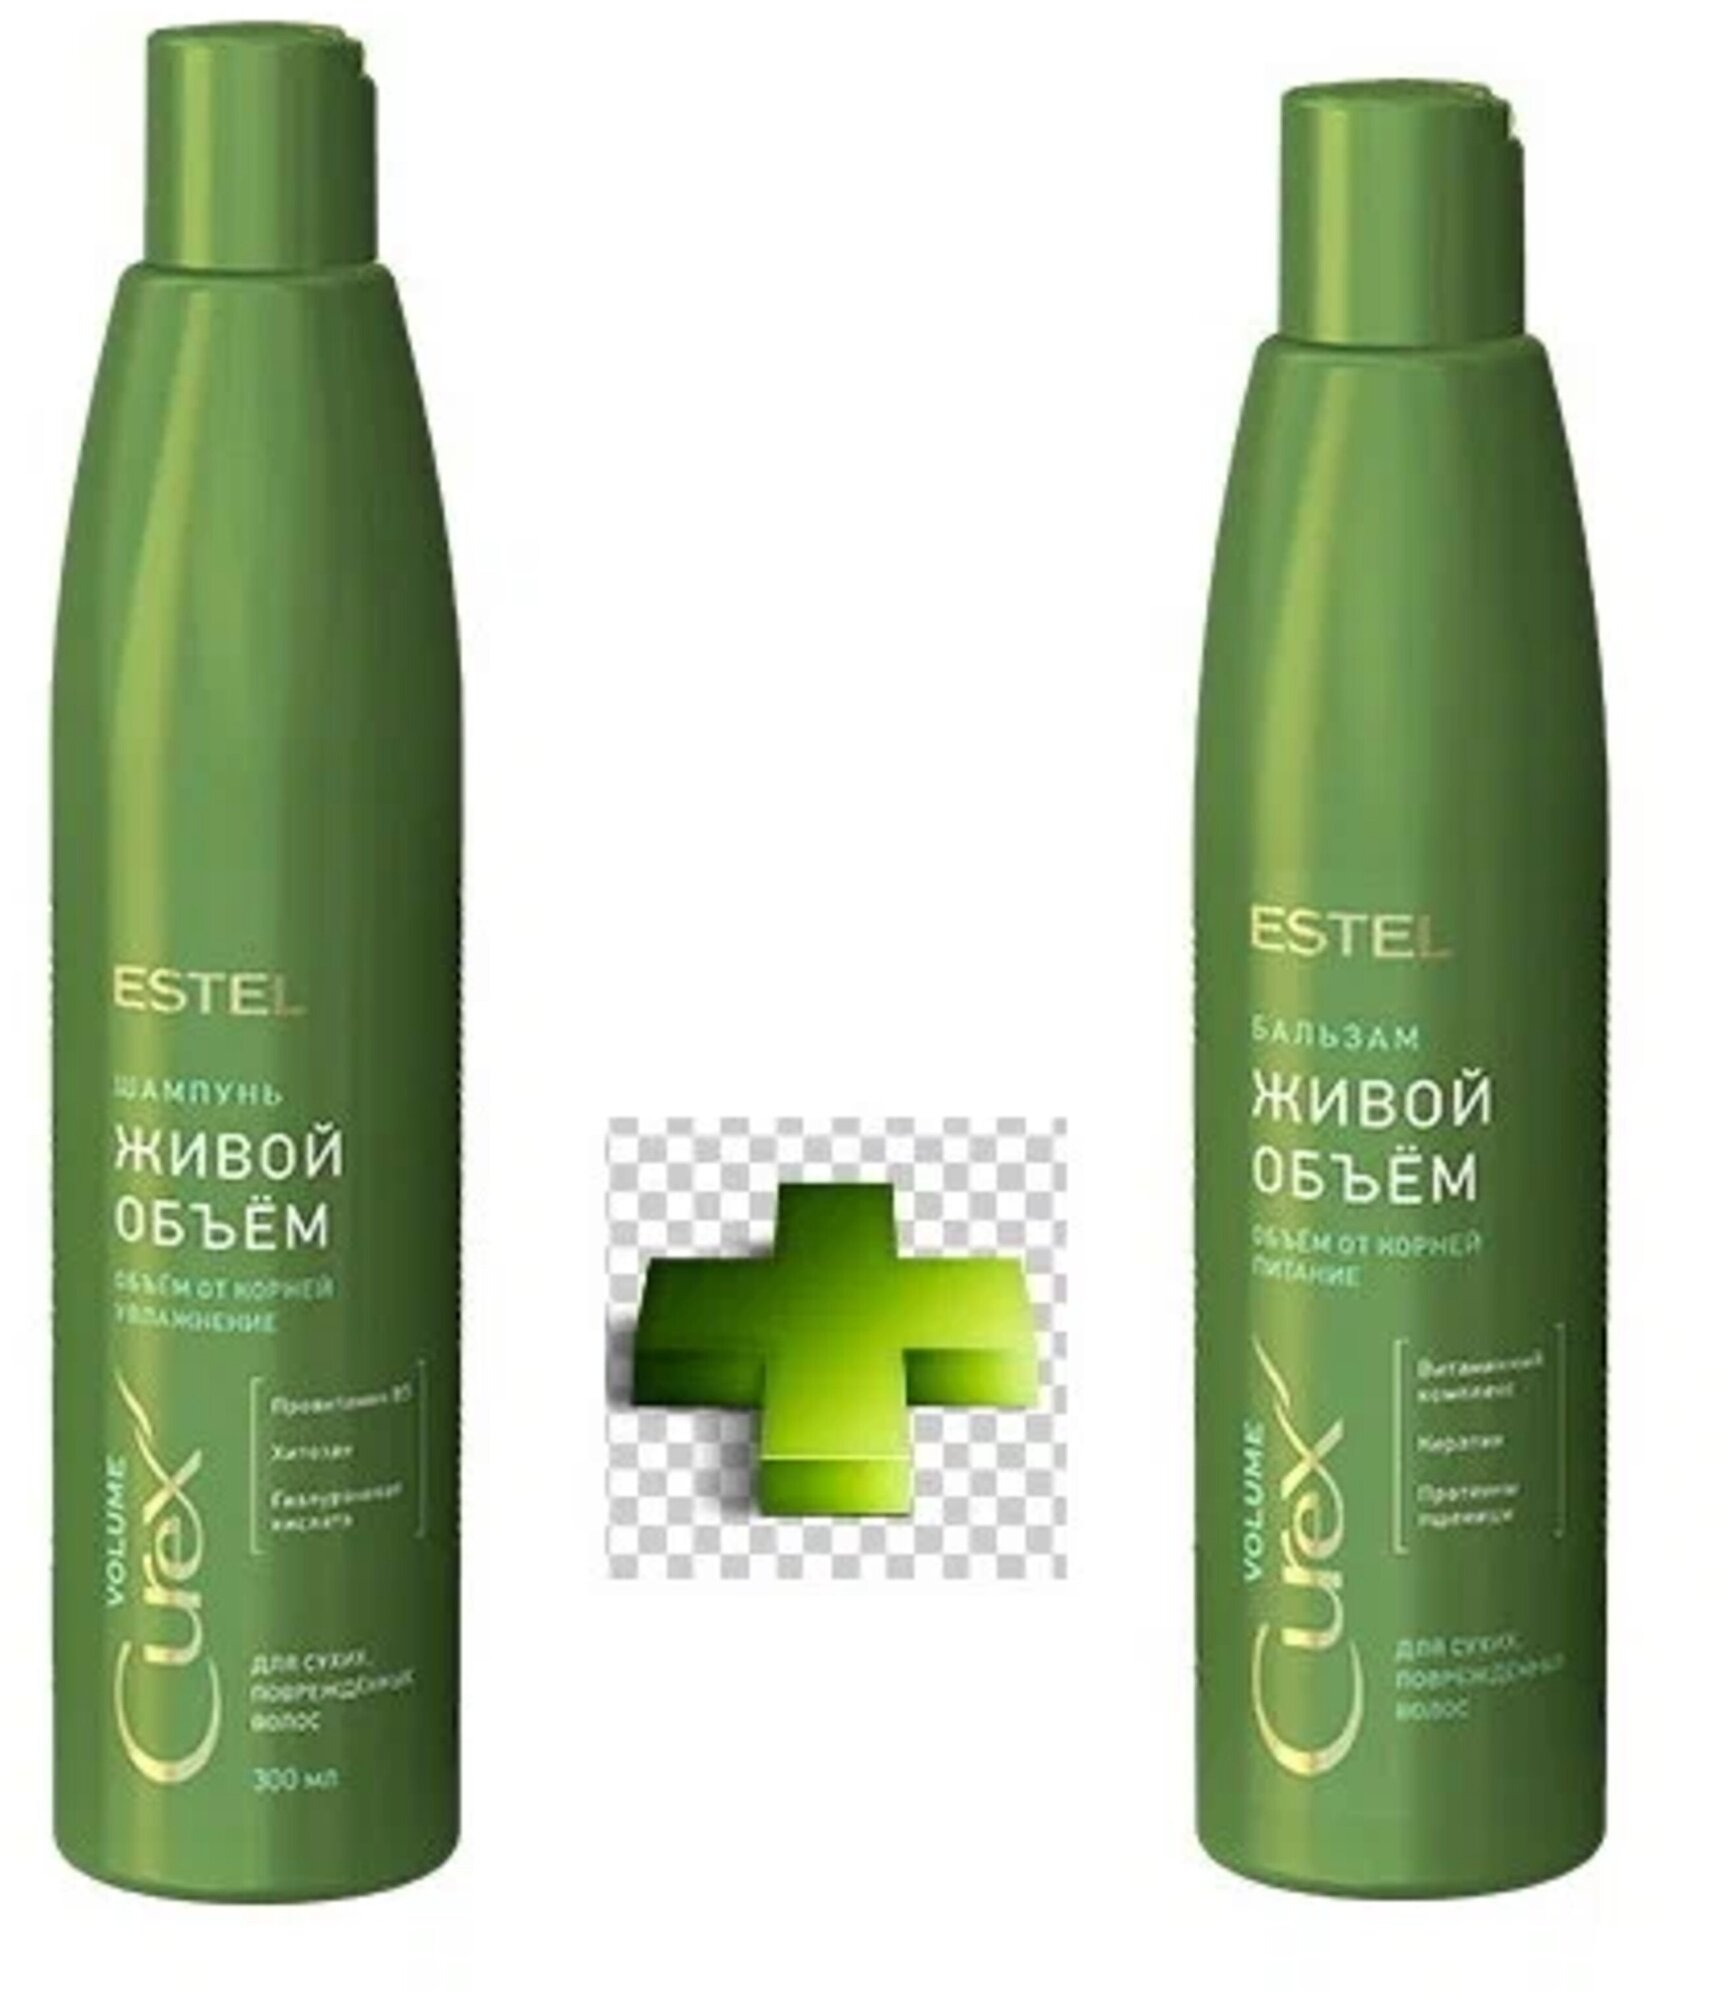 Комплект для сухих волос CUREX VOLUME Estel Professional (шампуньСУХ+бальзамСУХ), 550 мл